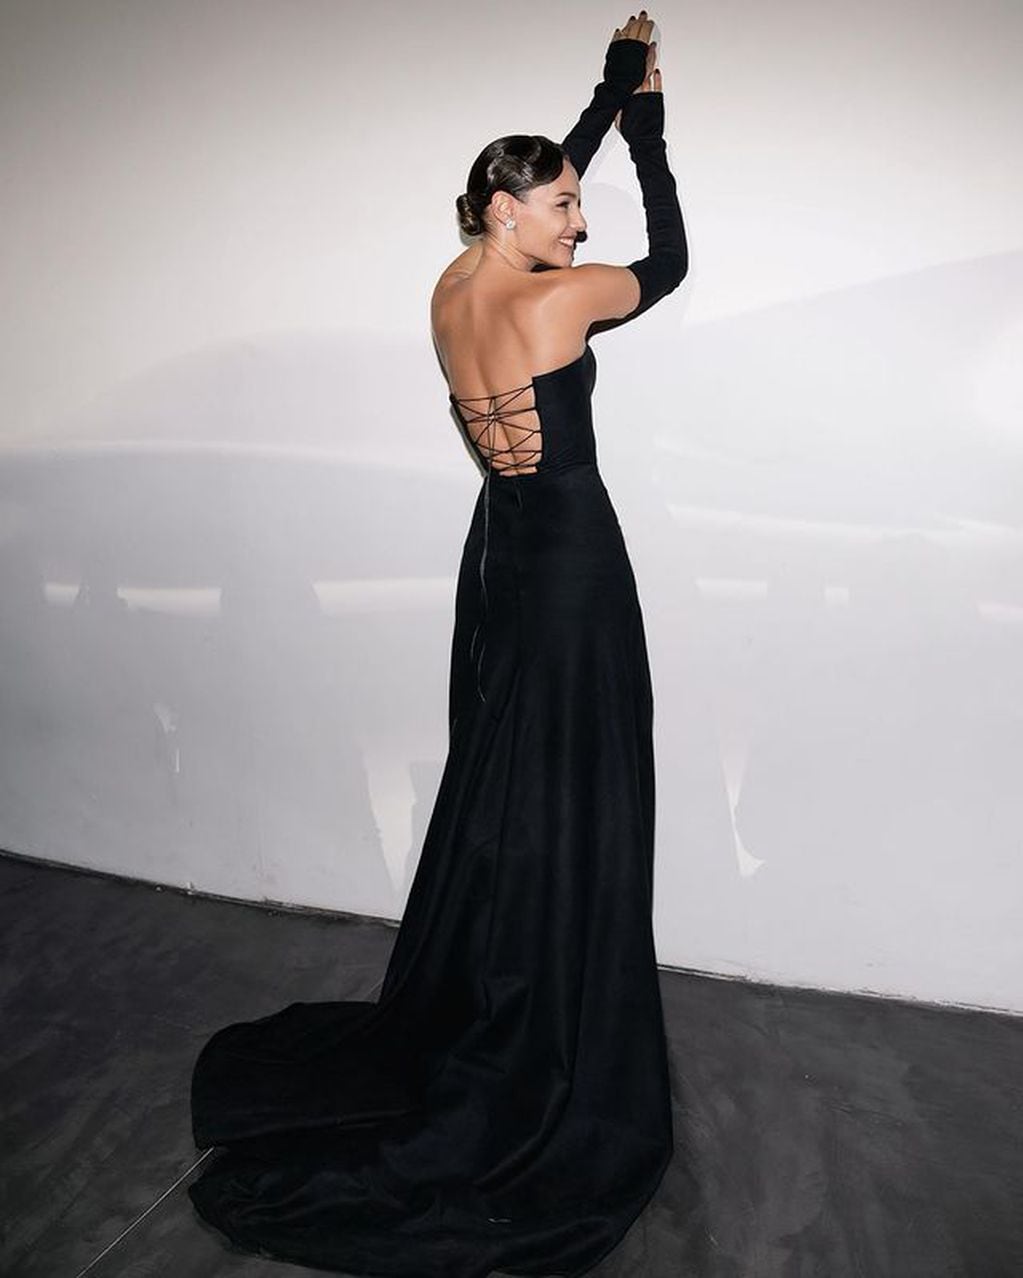 La modelo mostró toda su belleza con un imponente vestido negro con el que fue fotografiada / Foto: Instagram